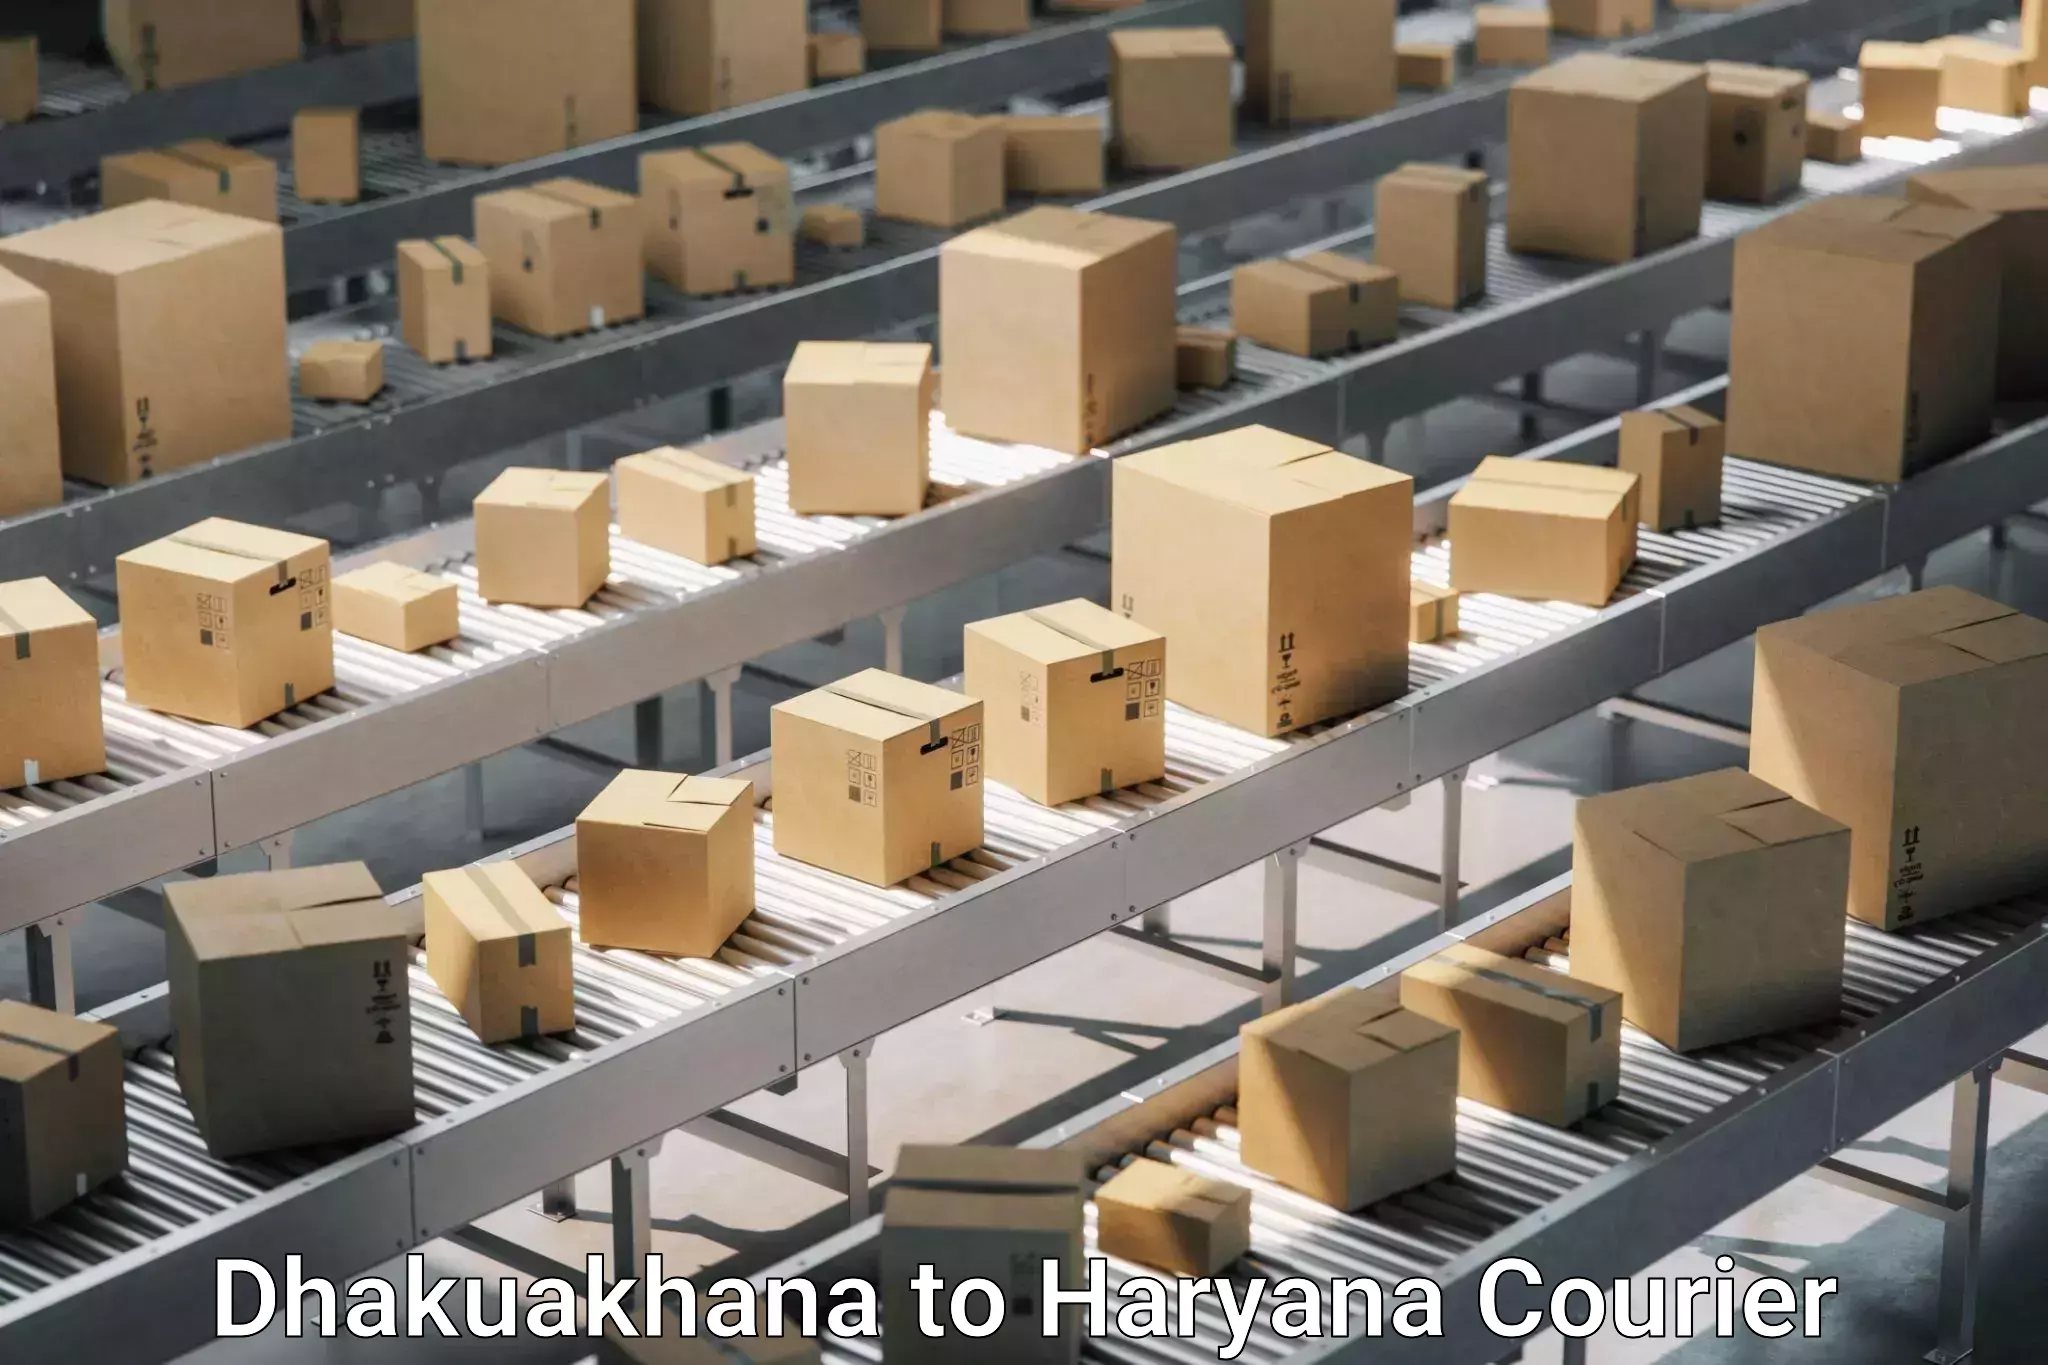 Reliable moving assistance Dhakuakhana to Haryana